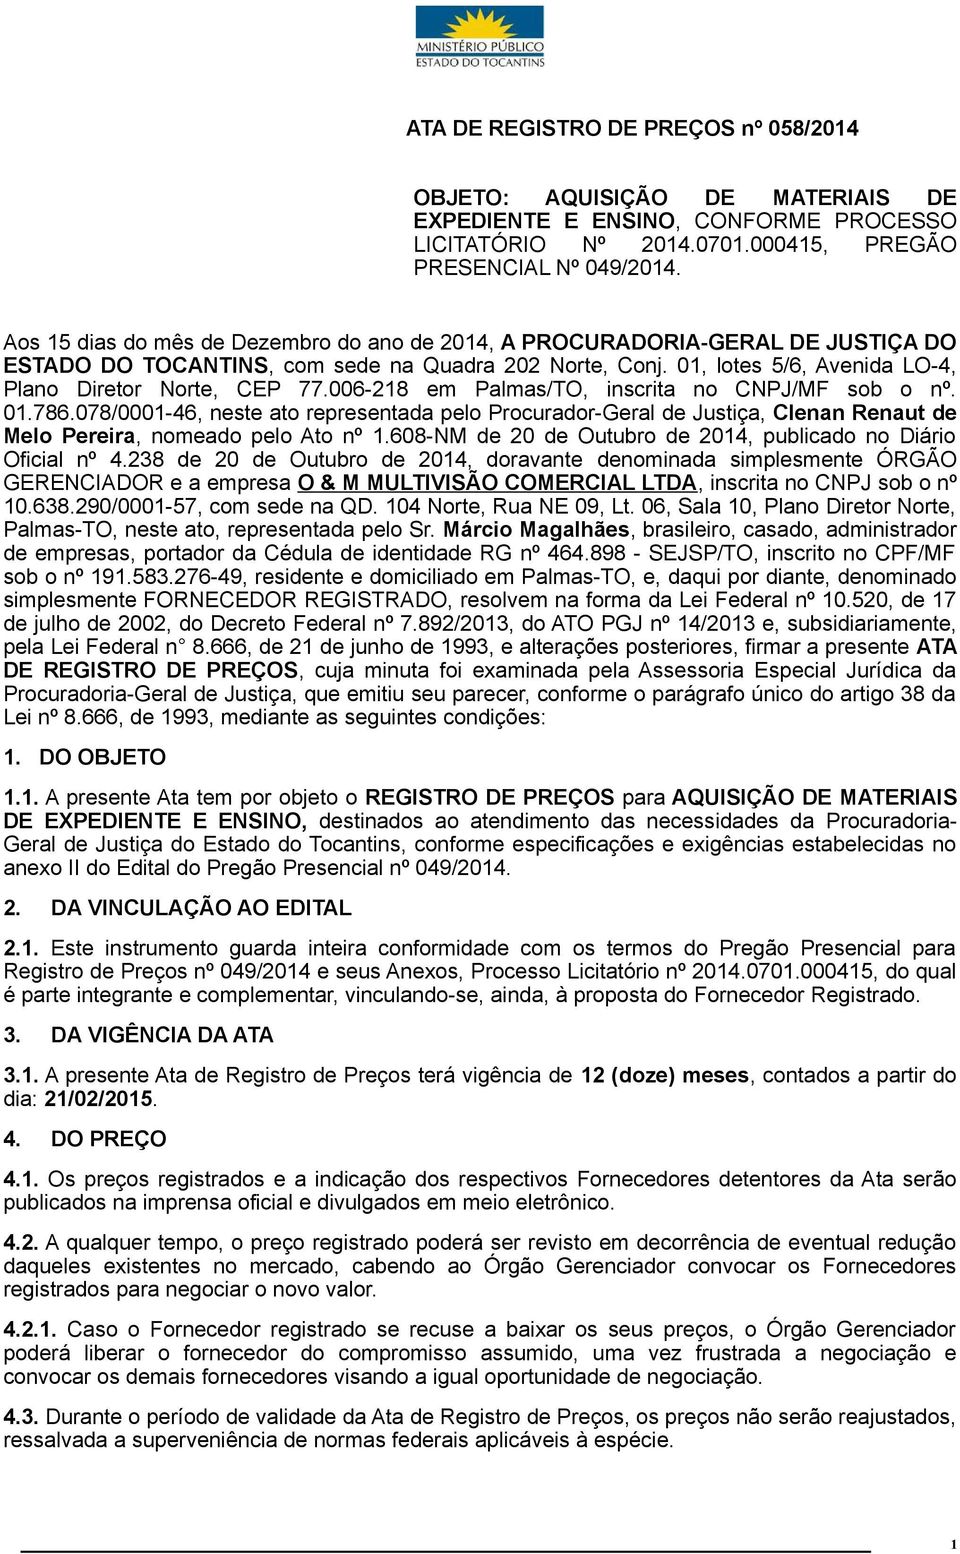 006-28 em Palmas/TO, inscrita no CNPJ/MF sob o nº. 0.786.078/000-46, neste ato representada pelo Procurador-Geral de Justiça, Clenan Renaut de Melo Pereira, nomeado pelo Ato nº.